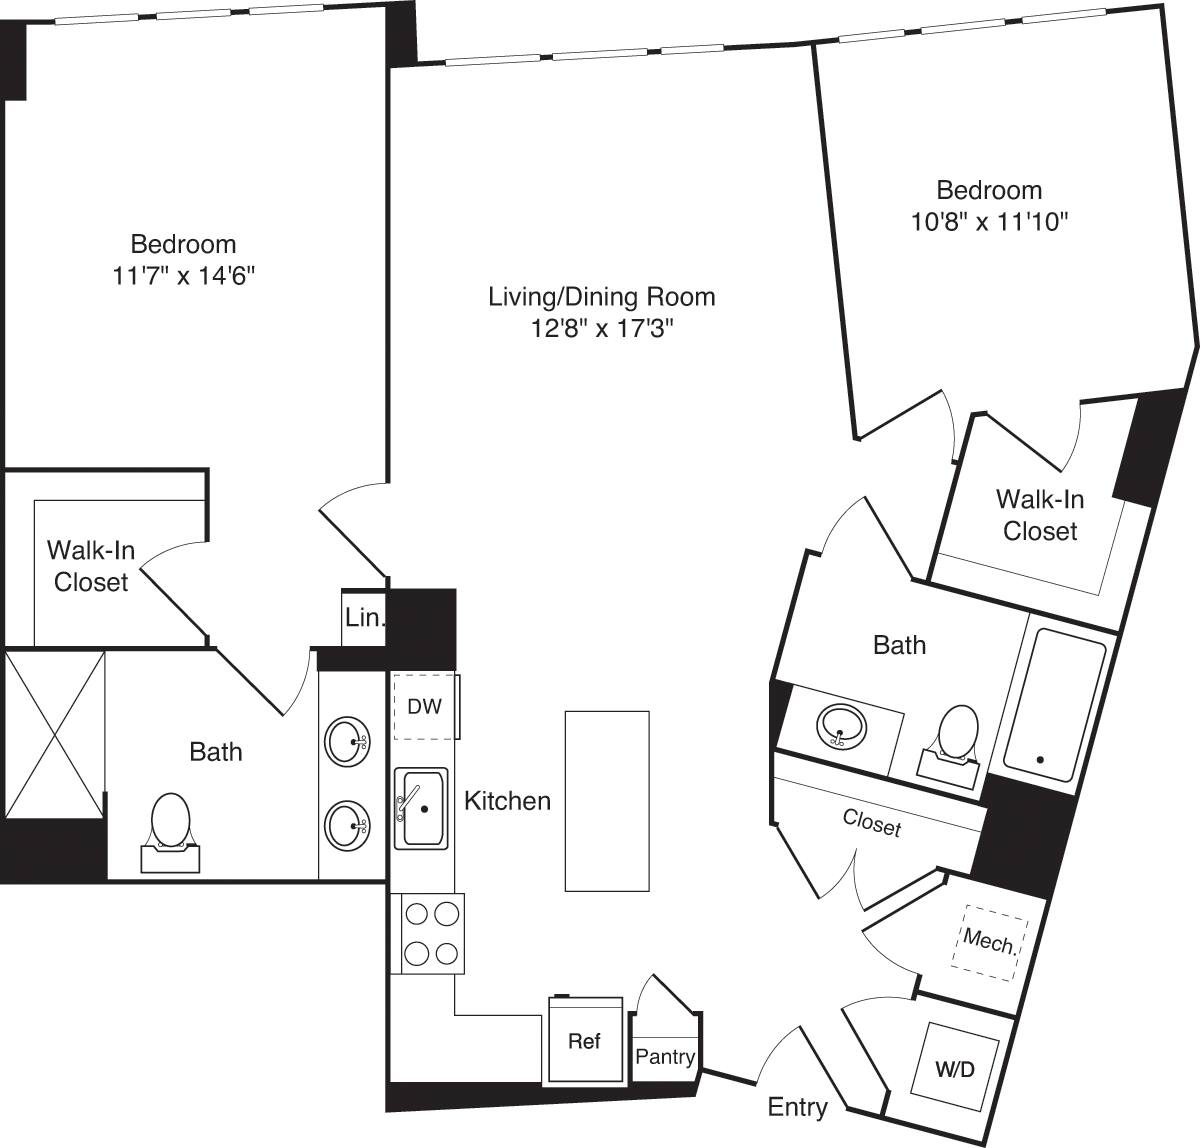 Floorplan diagram for C02, showing 2 bedroom